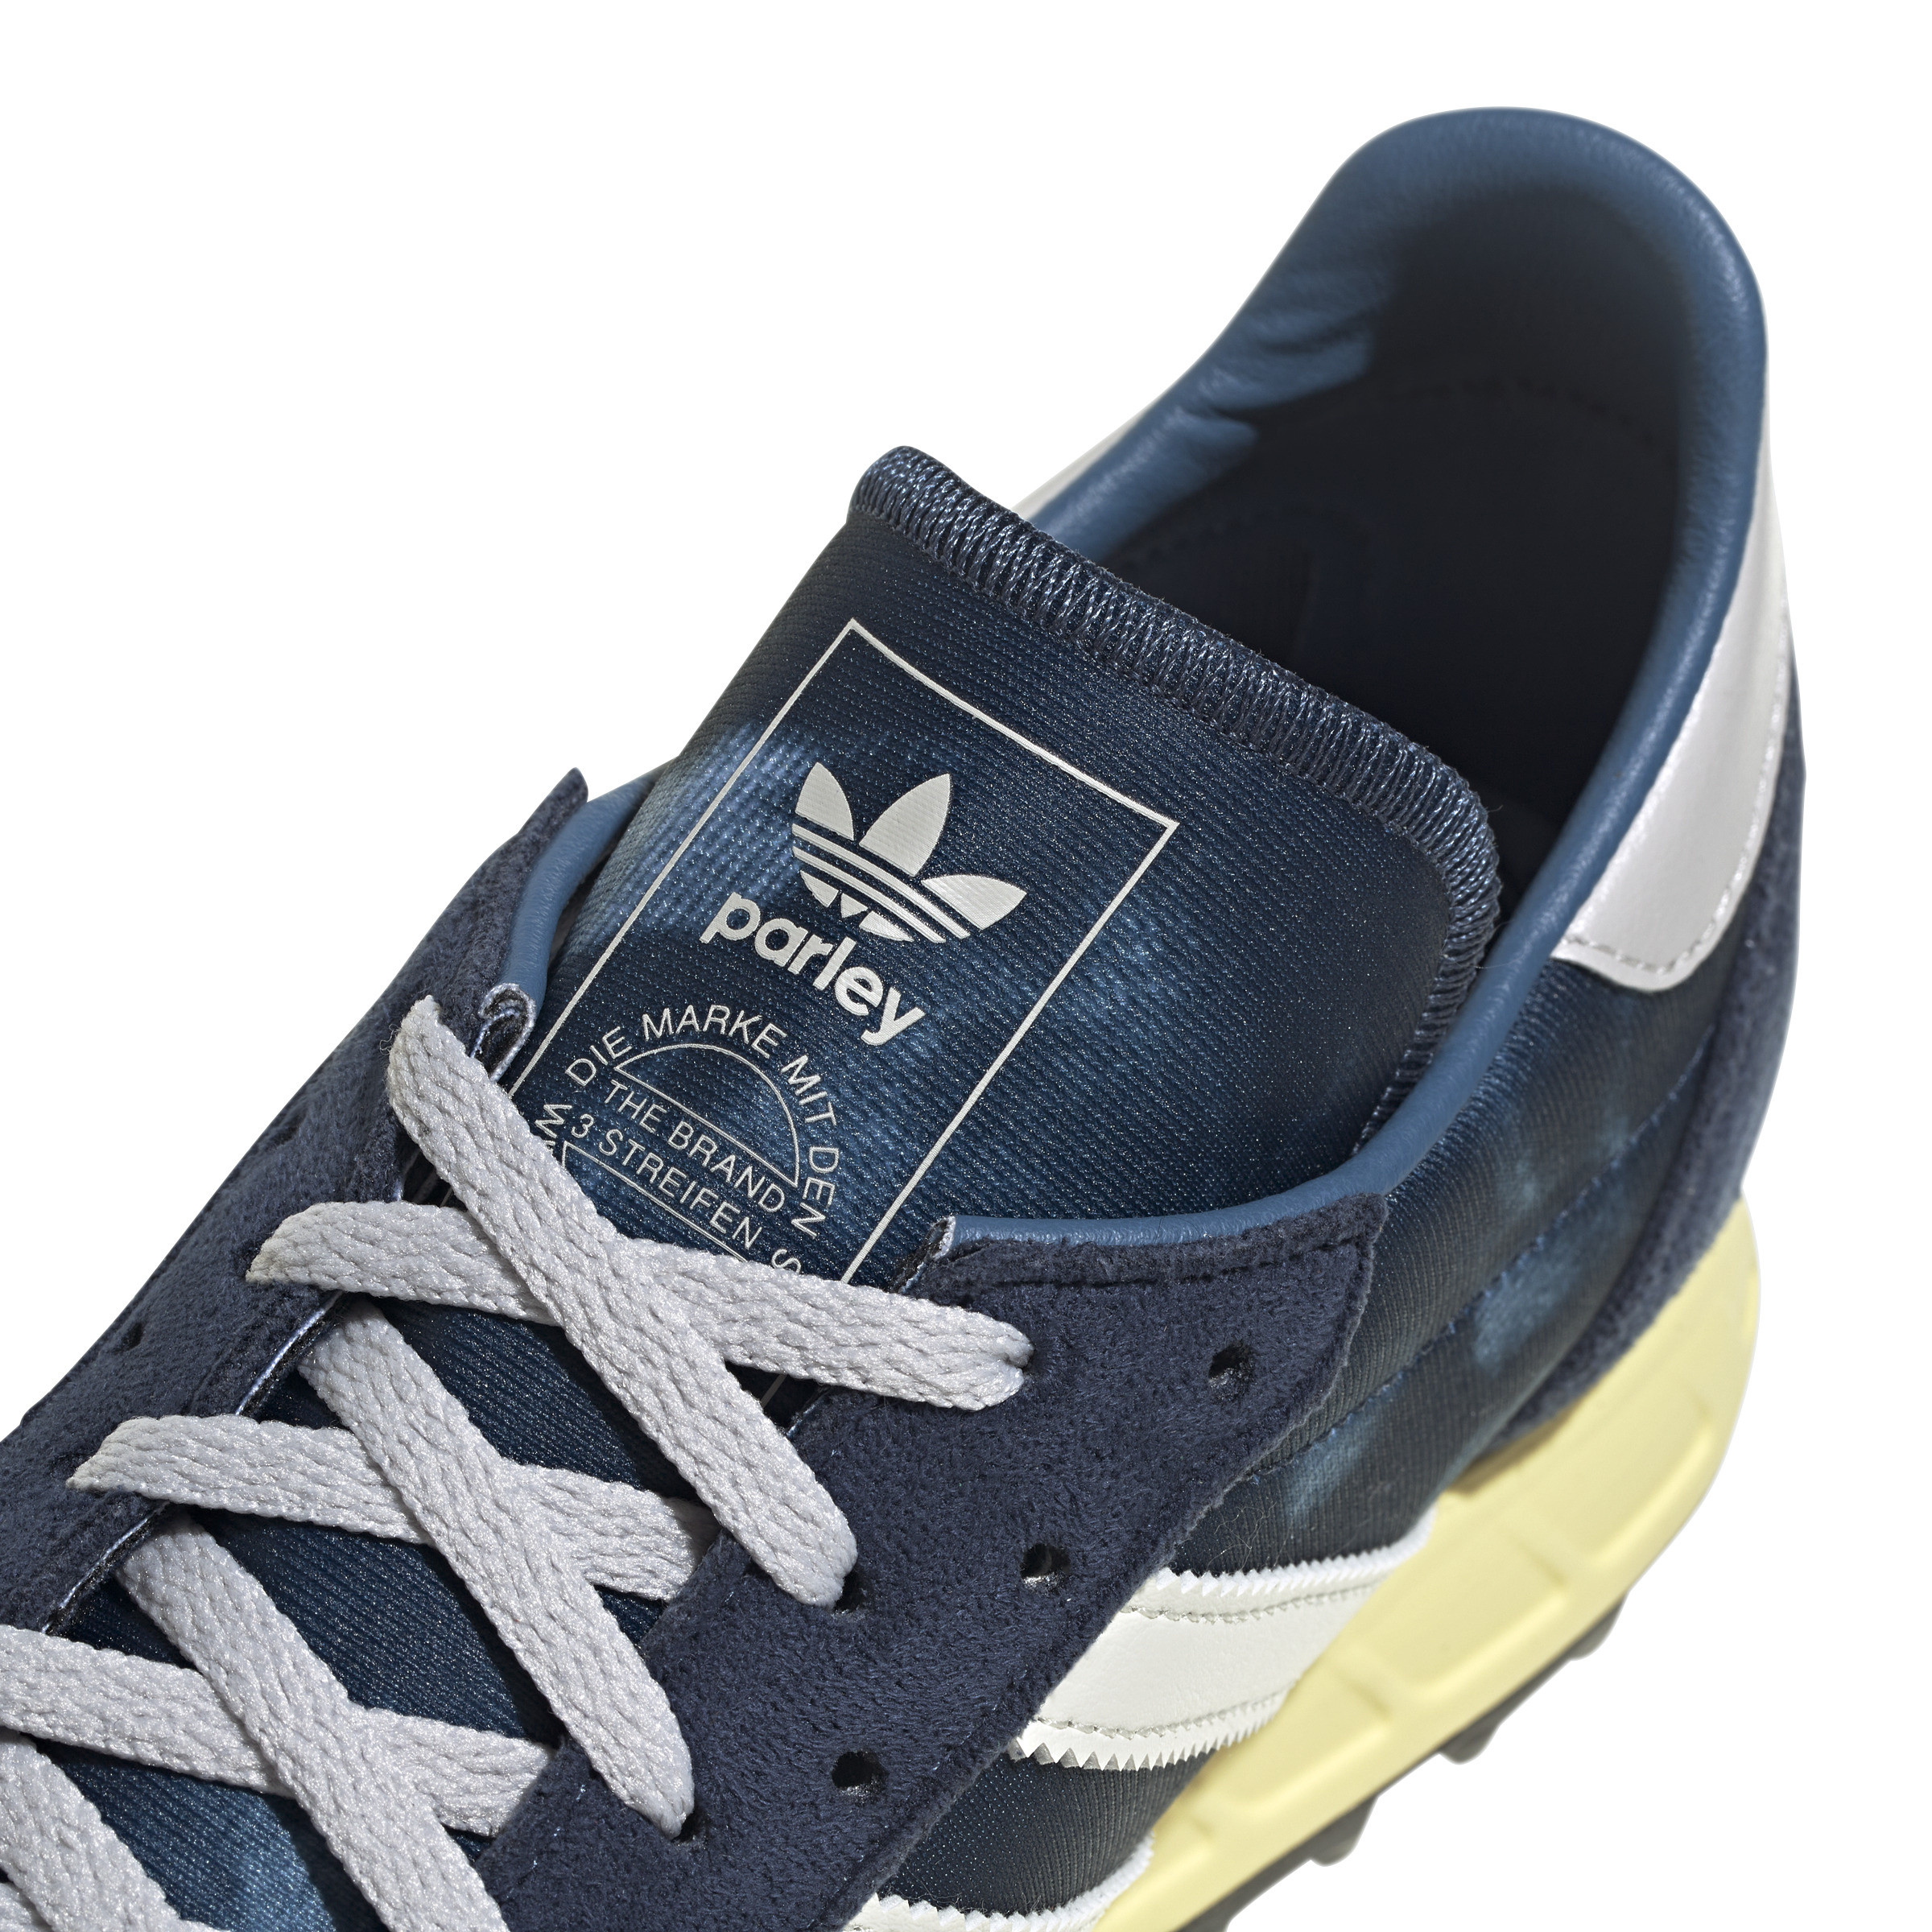 Adidas - Scarpe Adidas Trx Vintage, Blu, large image number 6